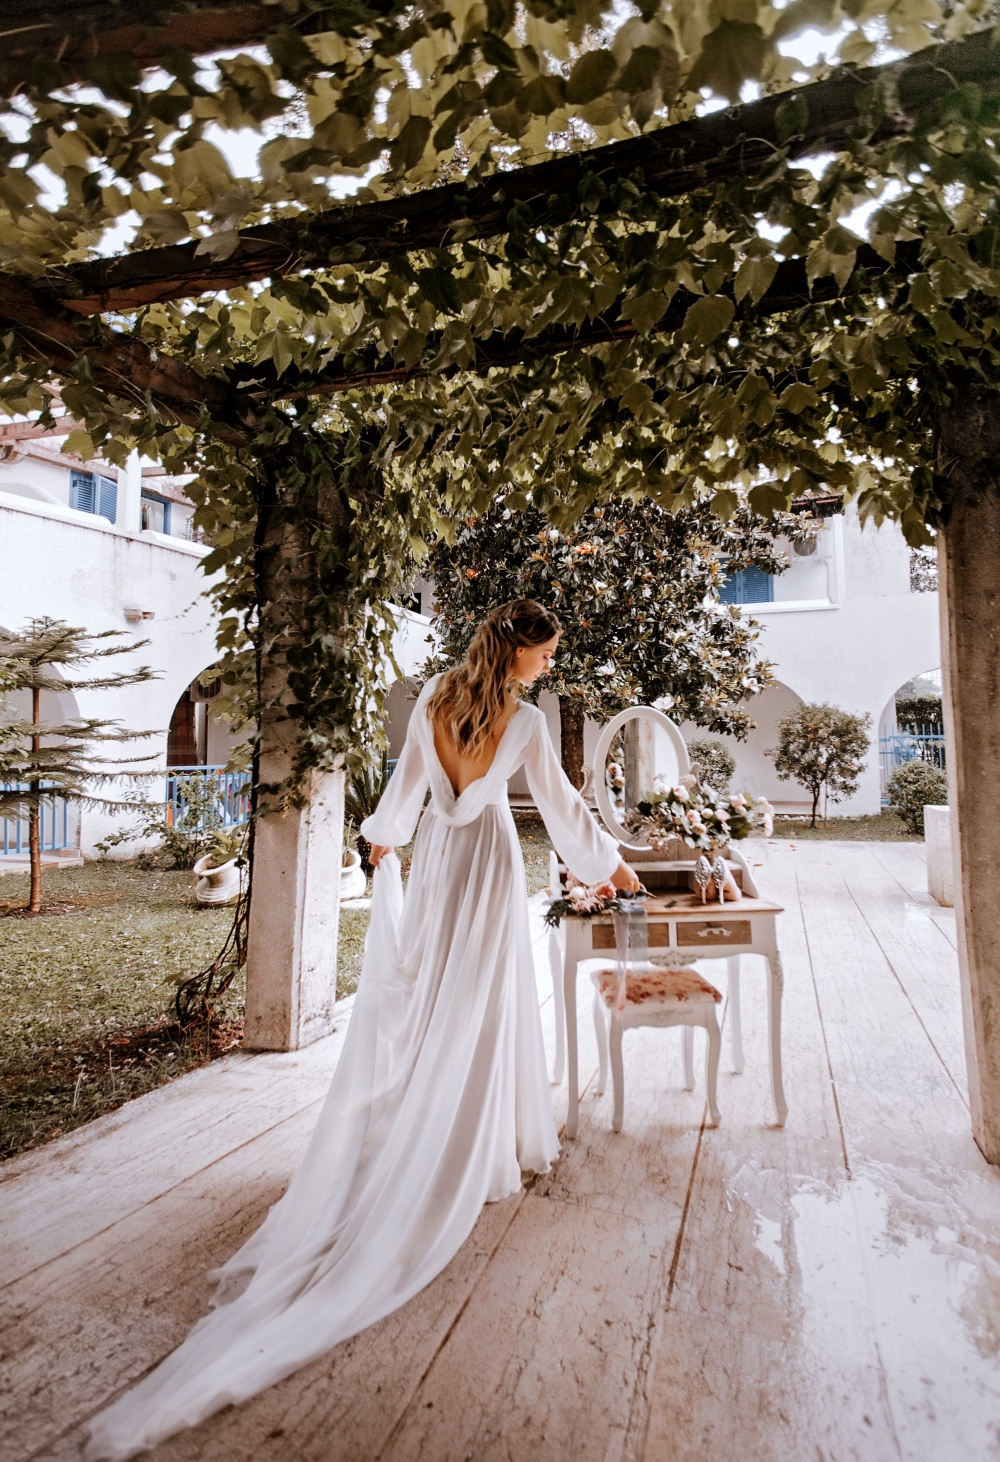 Утро невесты. Свадьба в Черногории 23 мая 2018 г. Елены и Андрея.